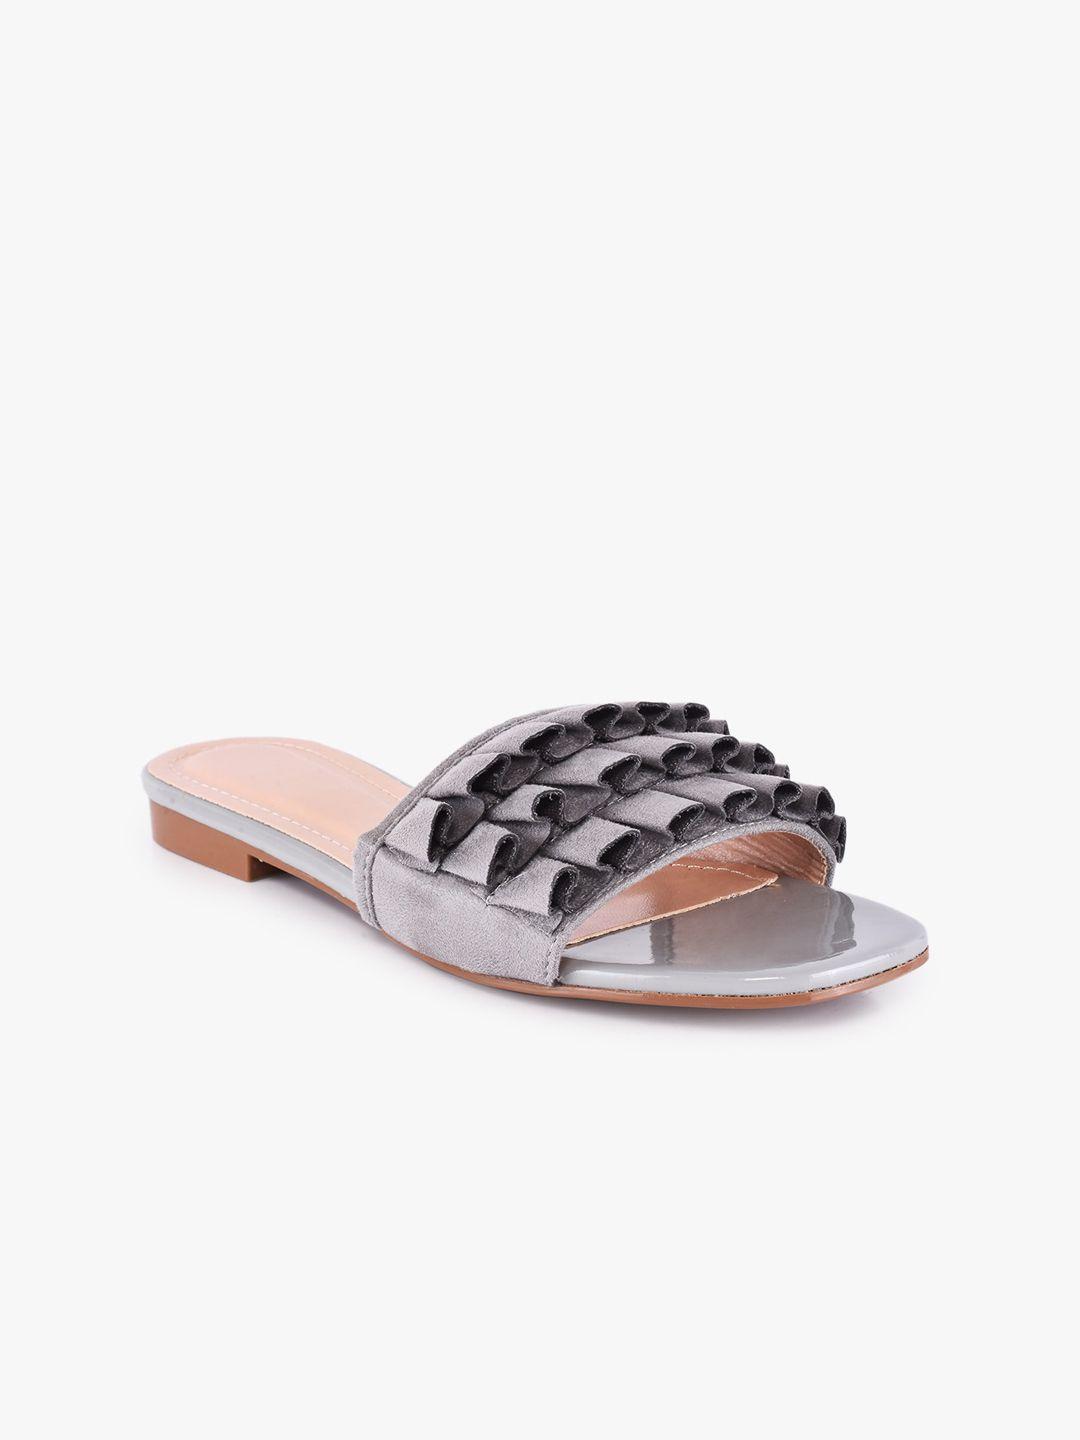 buckleup women grey printed open toe flats